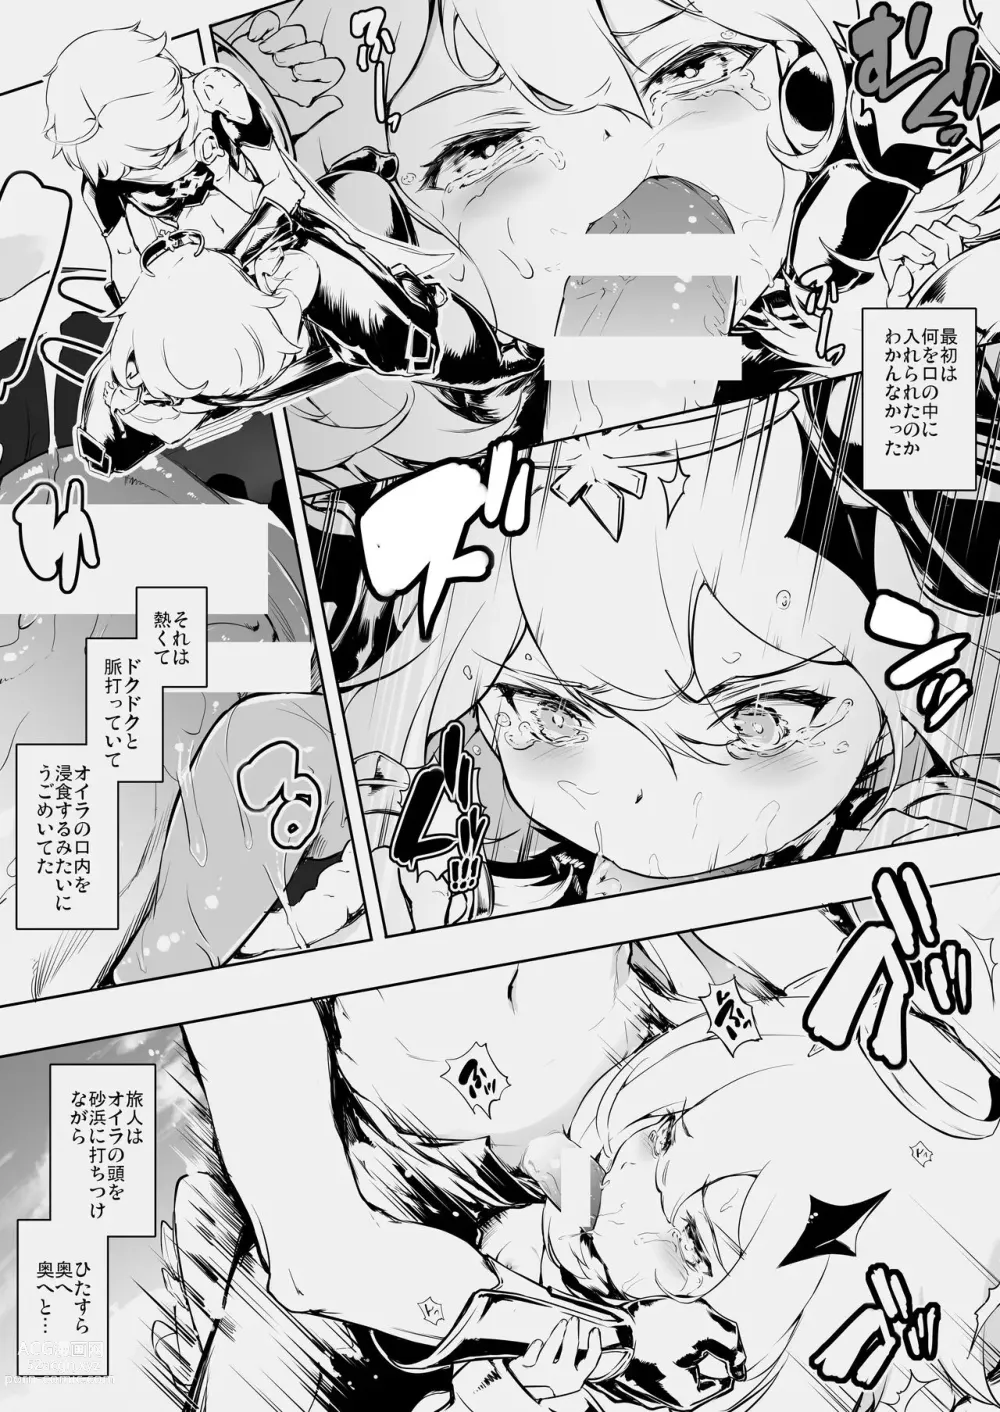 Page 4 of doujinshi Paimon Ecchi Manga